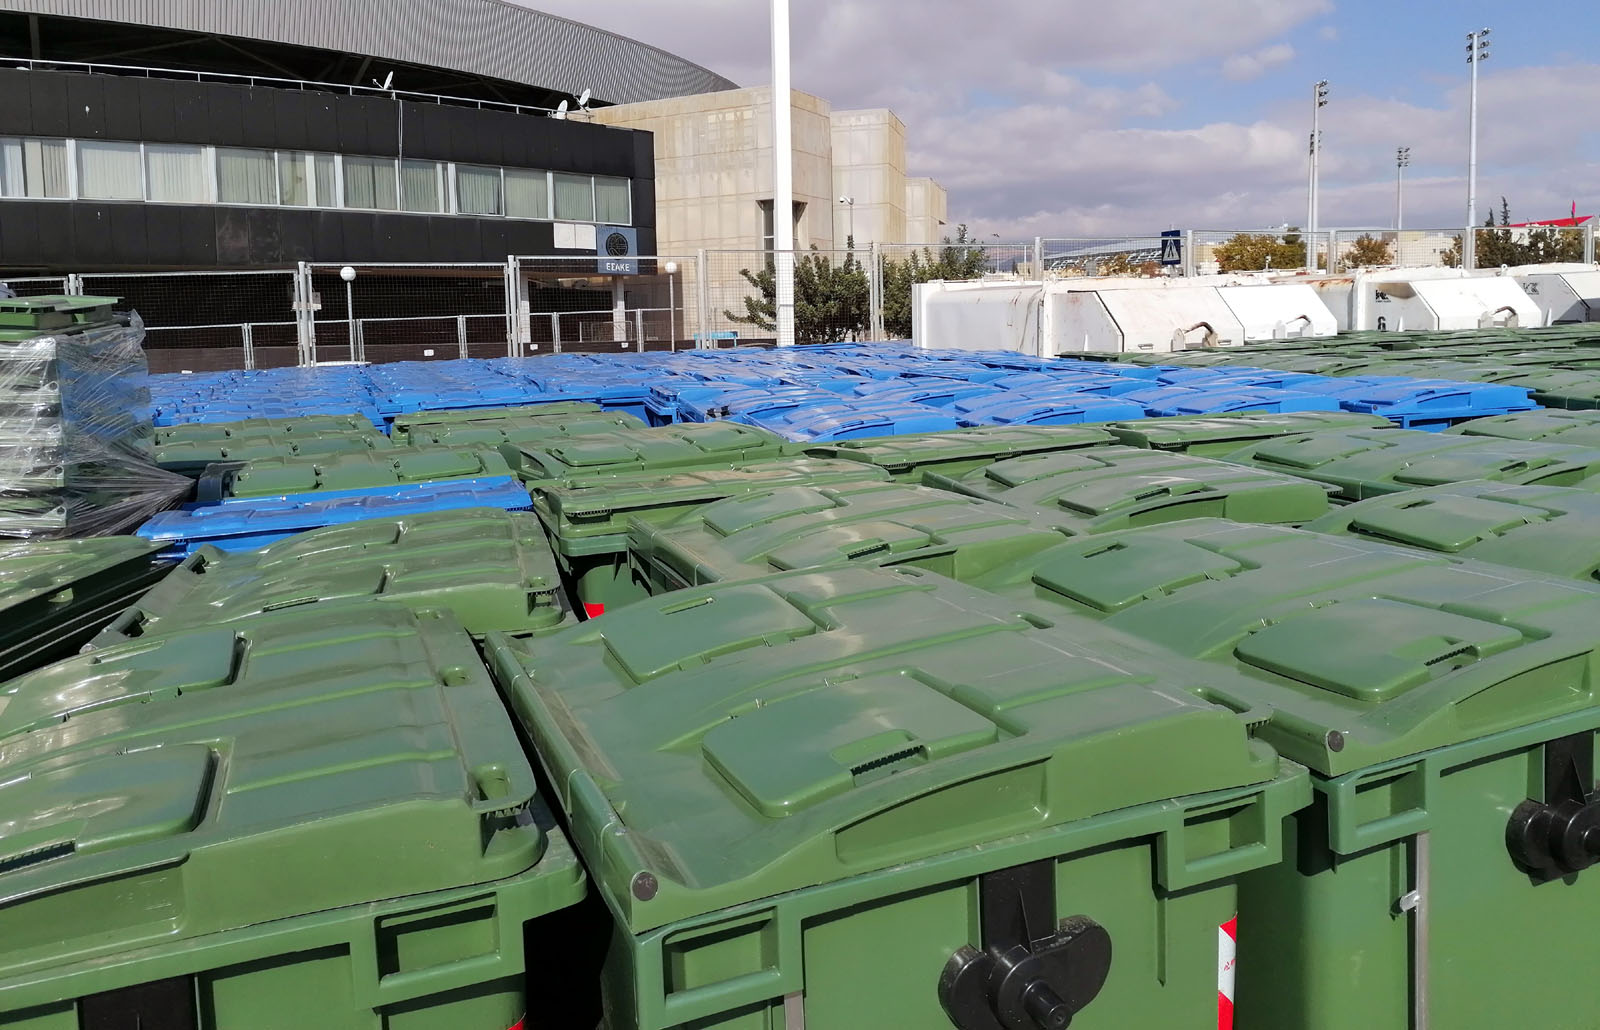 Μαρούσι: Ο δήμος παρέλαβε 800 νέους κάδους απορριμμάτων και ανακύκλωσης